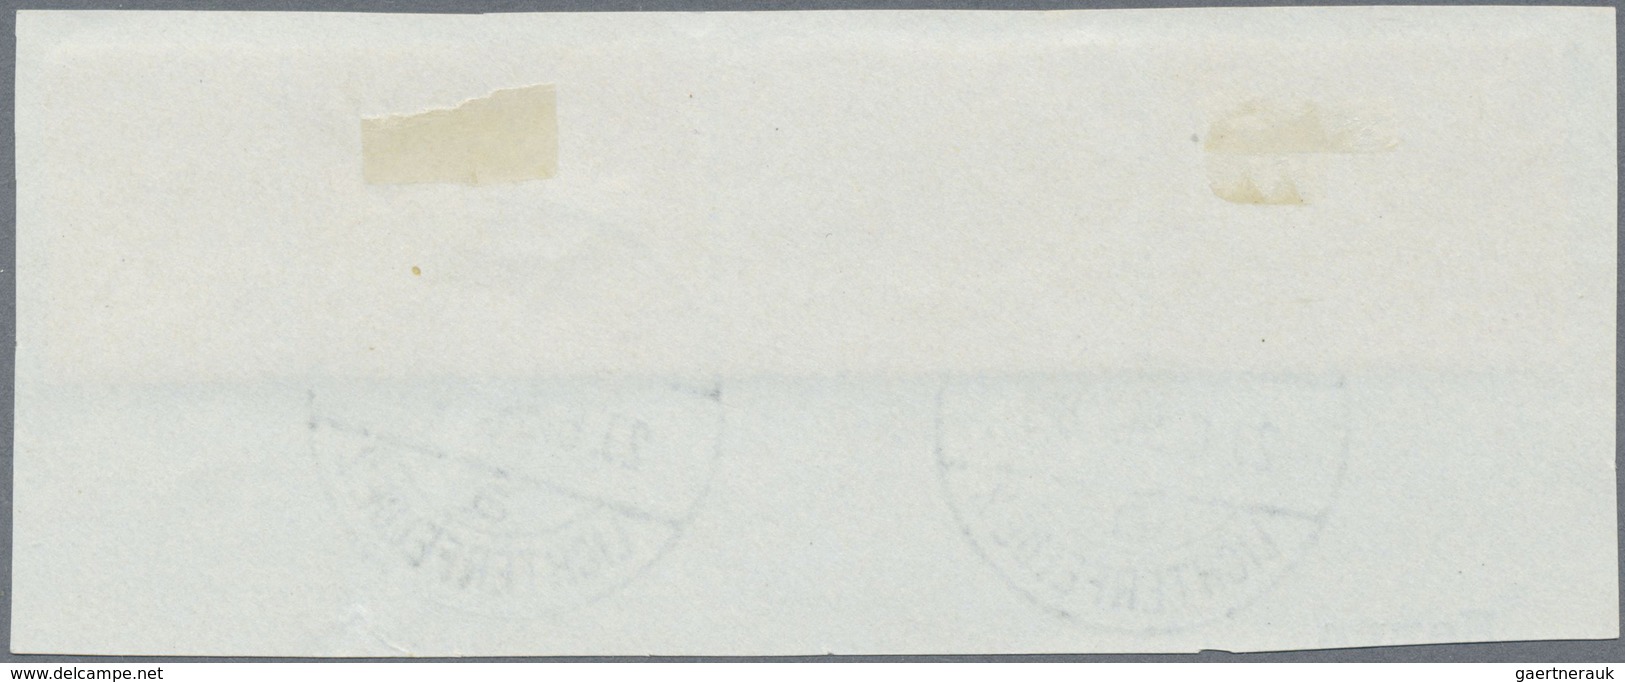 O/Brfst Deutsches Reich - Zusammendrucke: S 114 - W 58 Gestempelt/Briefstück, "Wagner" Als Kpl. Tadellose Zu - Se-Tenant